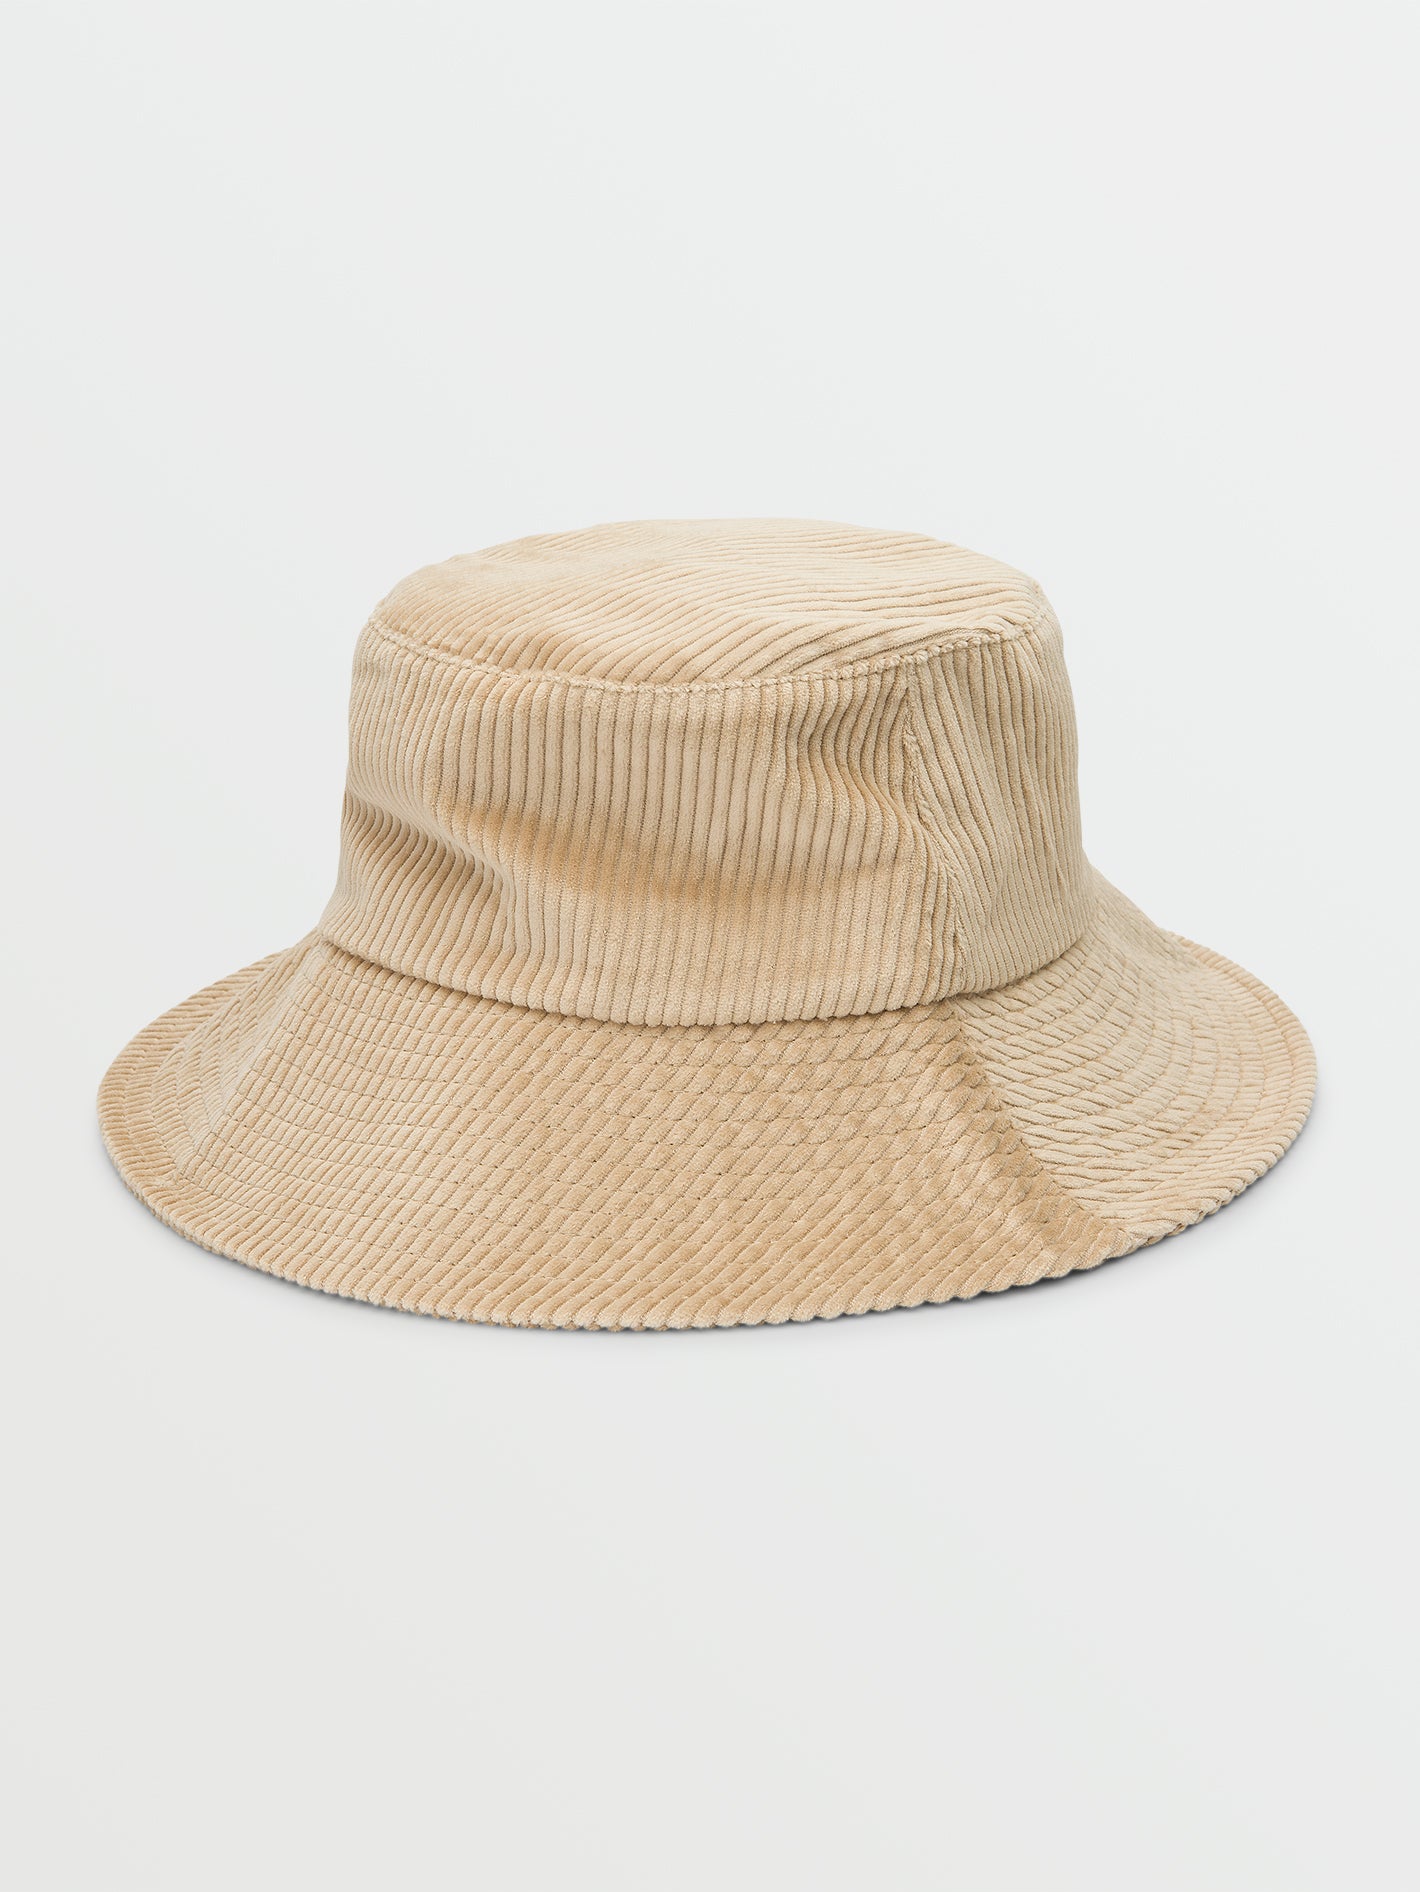 Mint Wholesale Corduroy Women Bucket Hat